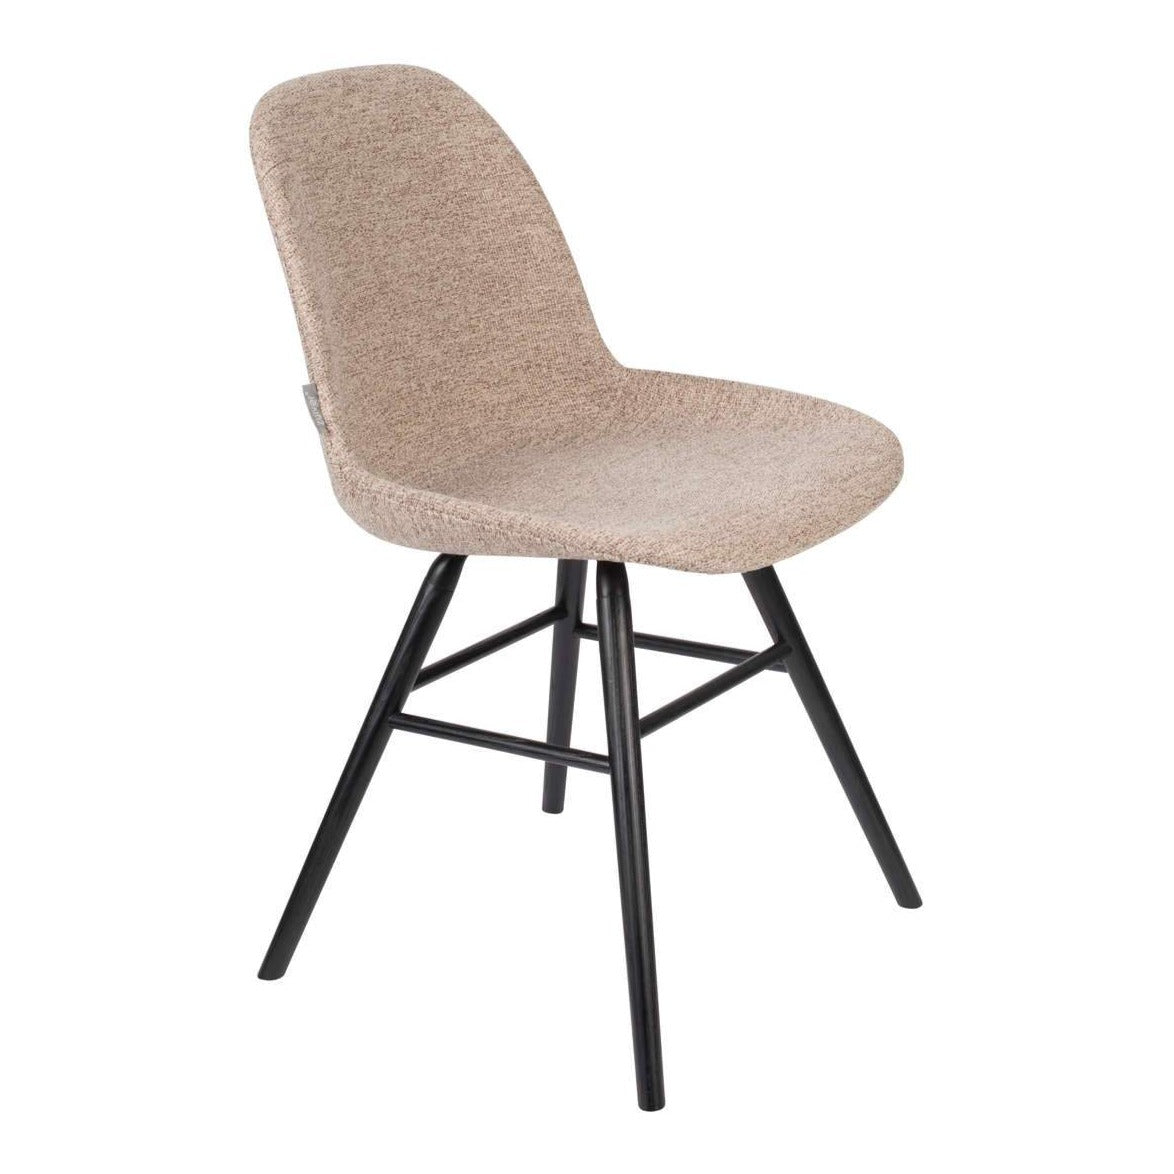 ALBERT KUIP SOFT beige chair, Zuiver, Eye on Design